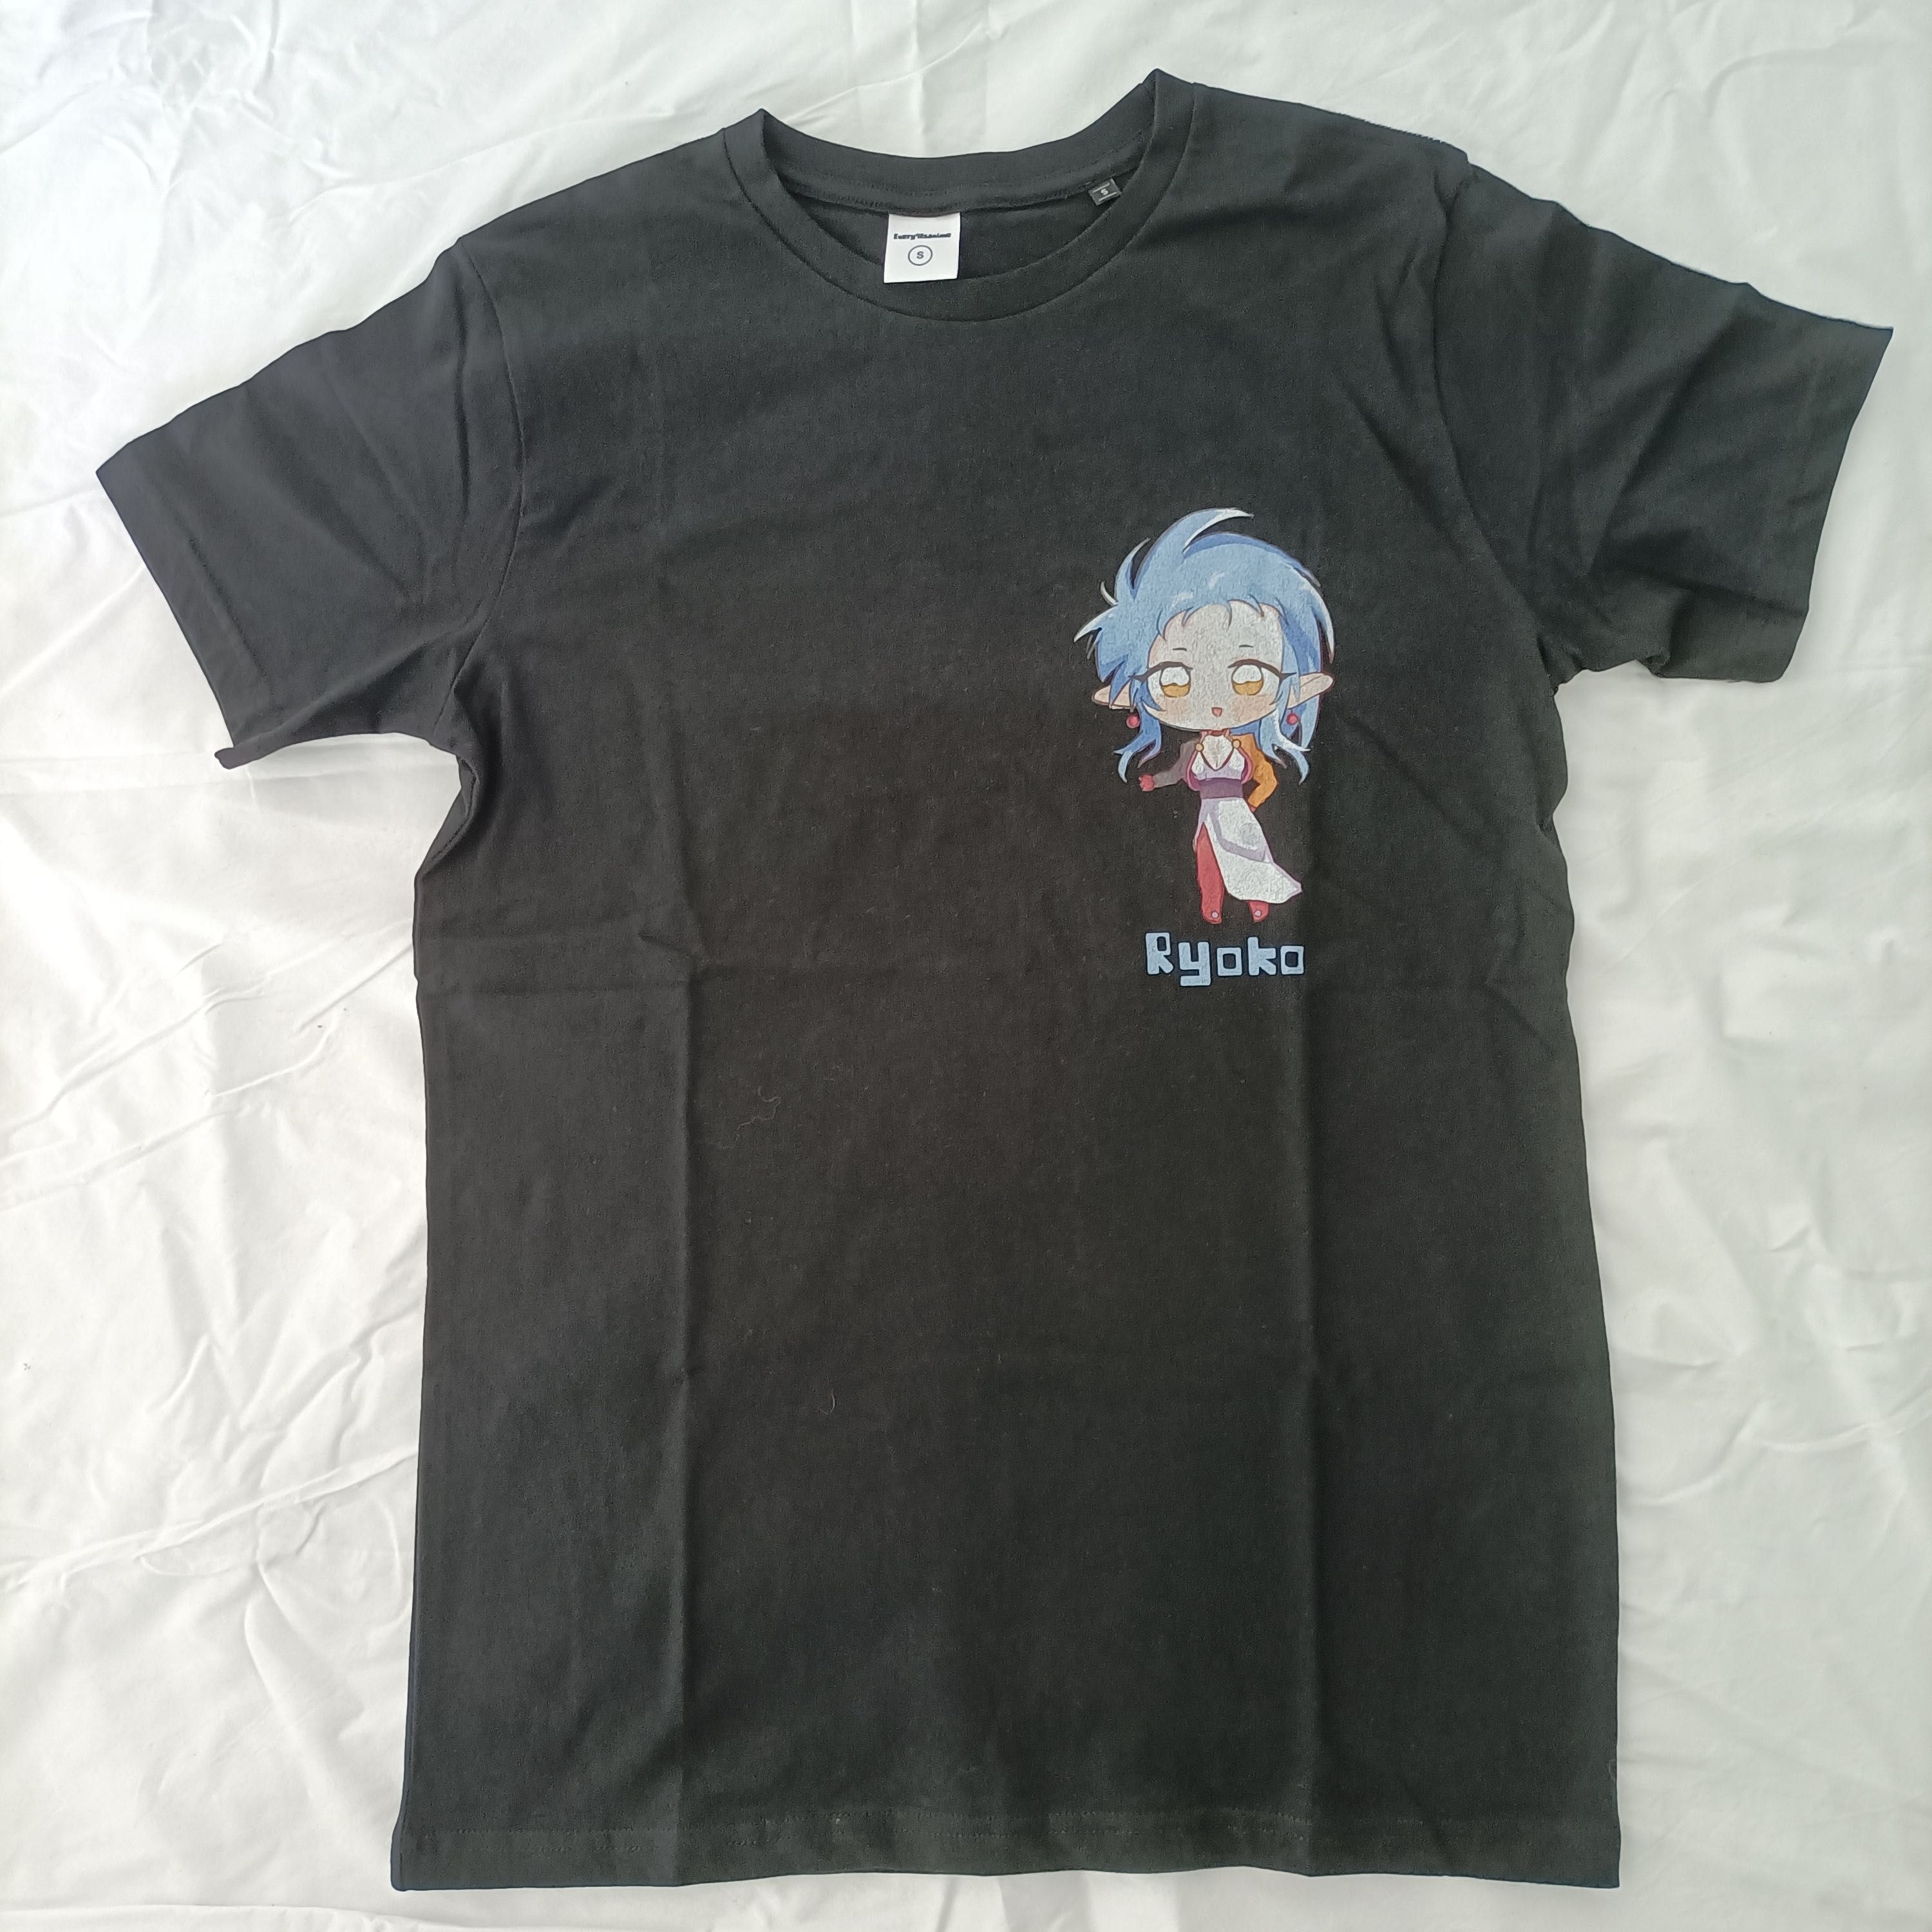 T-Shirts Anime novas nunca usadas - Ryoko Hakubi (Tenchi Muyo)- S a XL